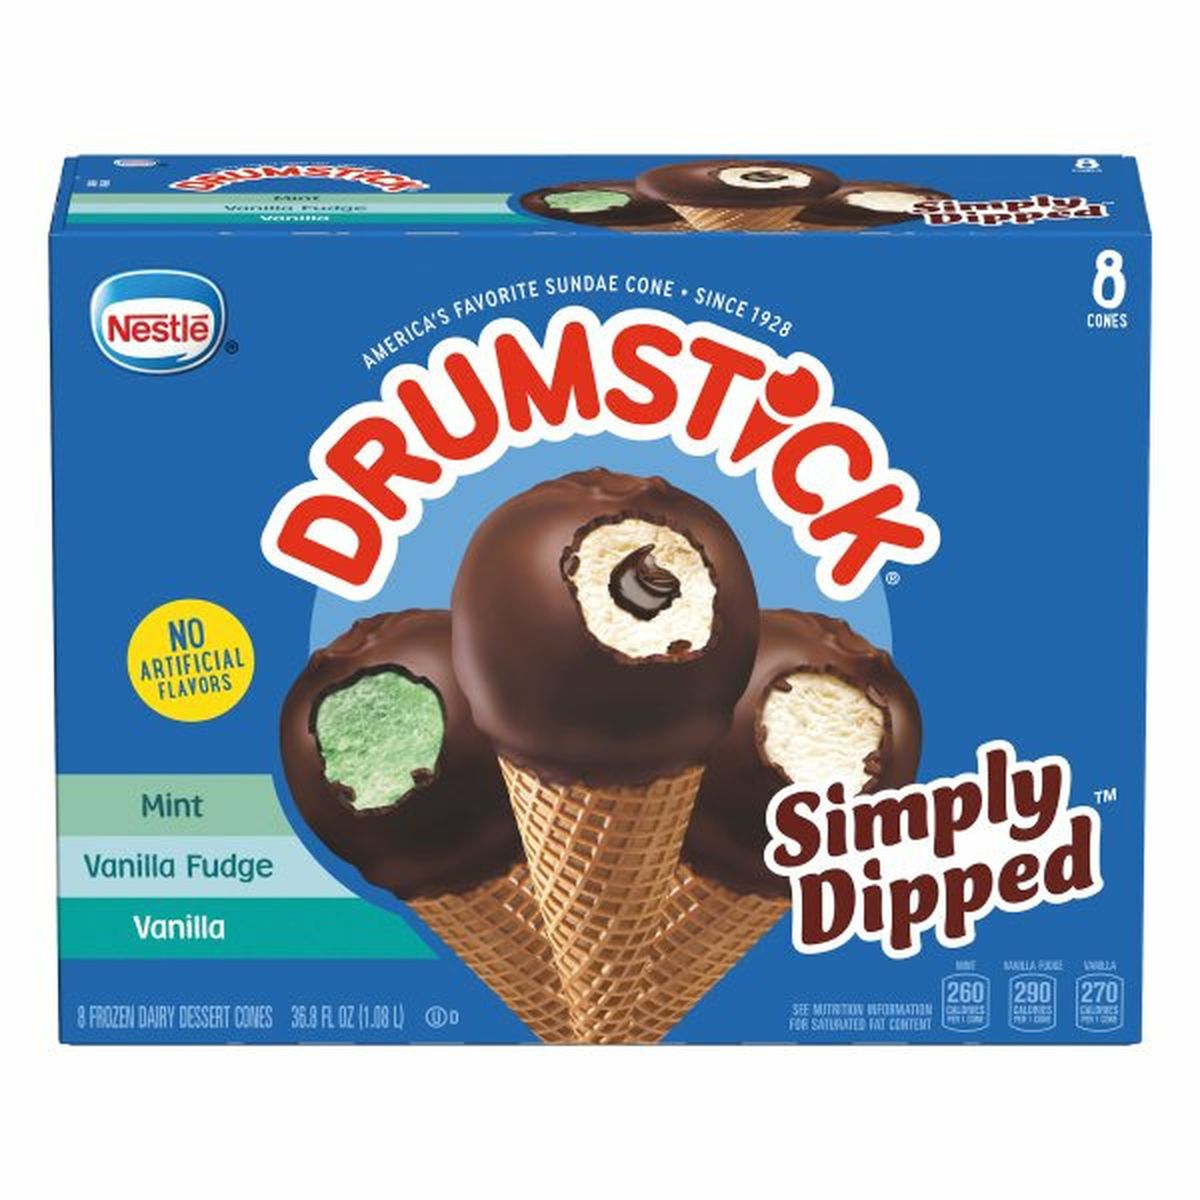 Calories in Drumstick Simply Dipped Frozen Dairy Dessert Cones, Mint/Vanilla Fudge/Vanilla, 8 Pack